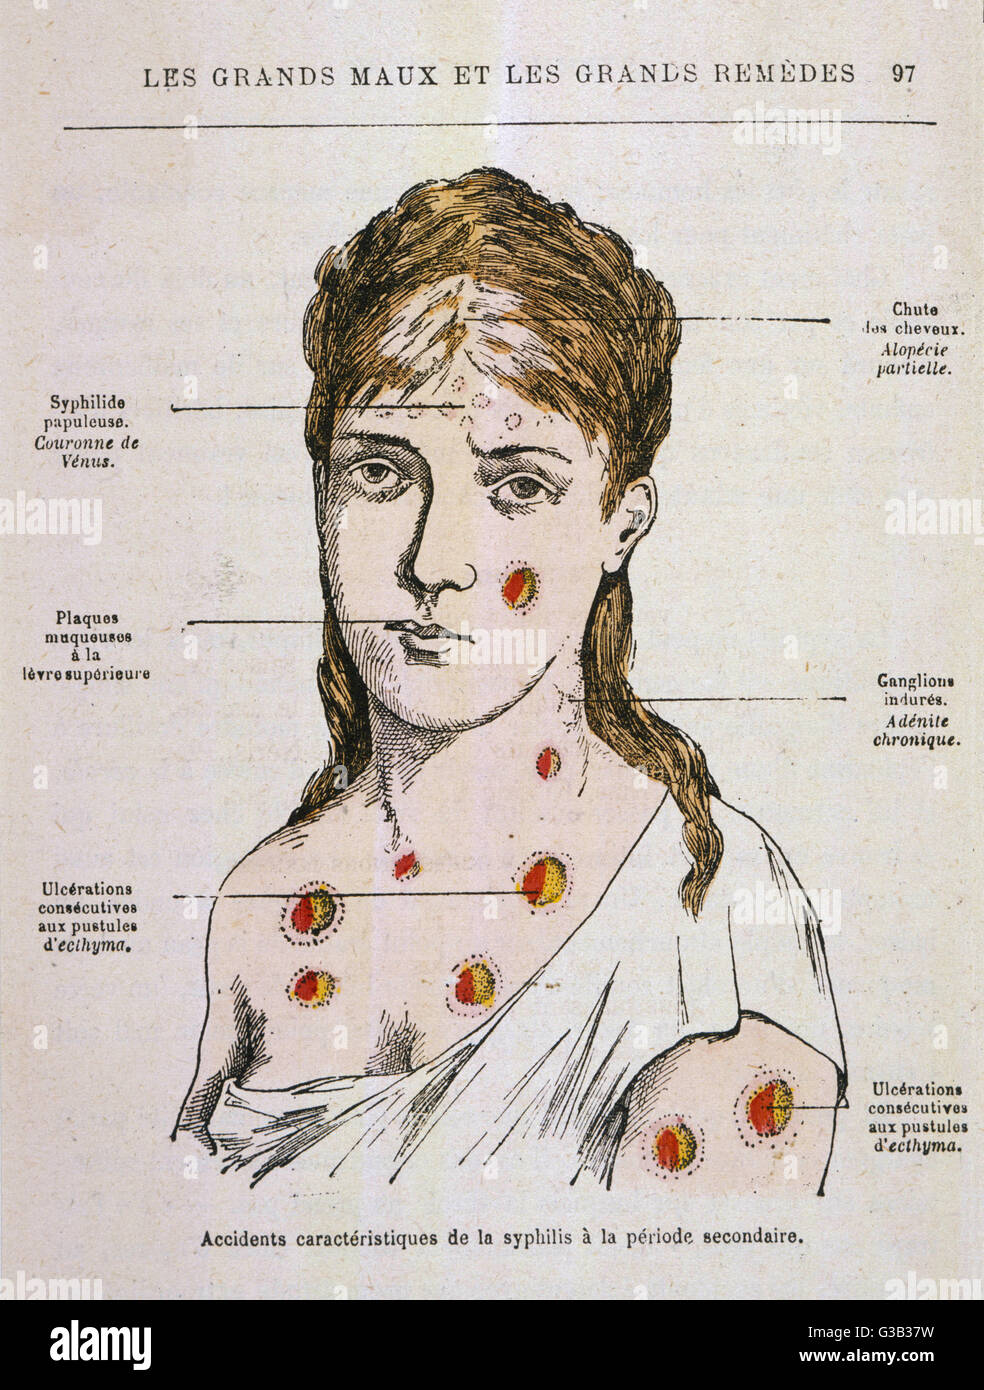 Diagramm den Ausschlag zeigen, die in der zweiten Phase der Syphilis Datum erscheint: 1883 Stockfoto